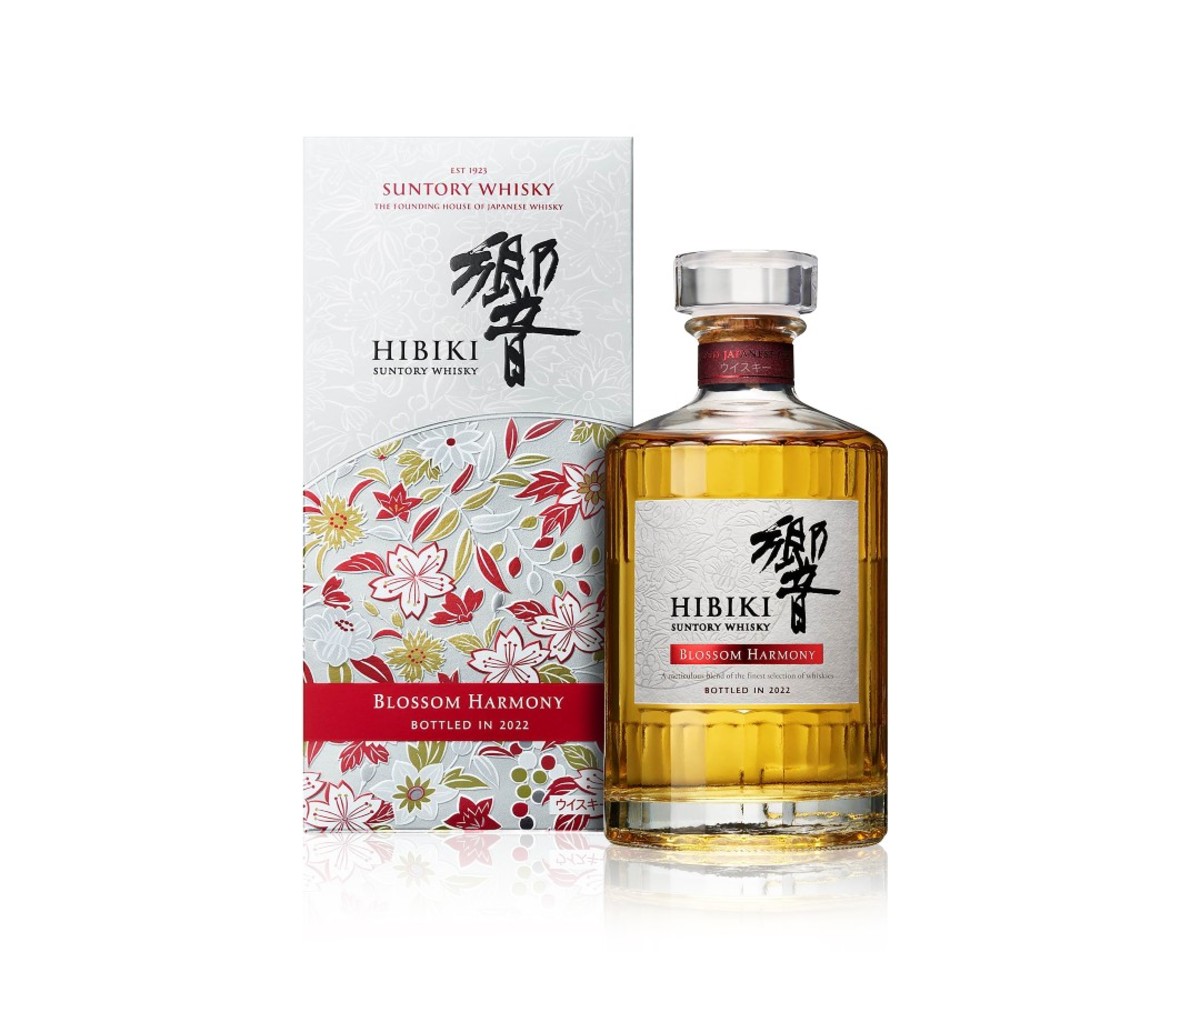 Hibiki 30 Takes Ultra-Premium Japanese Whisky to the Next Level